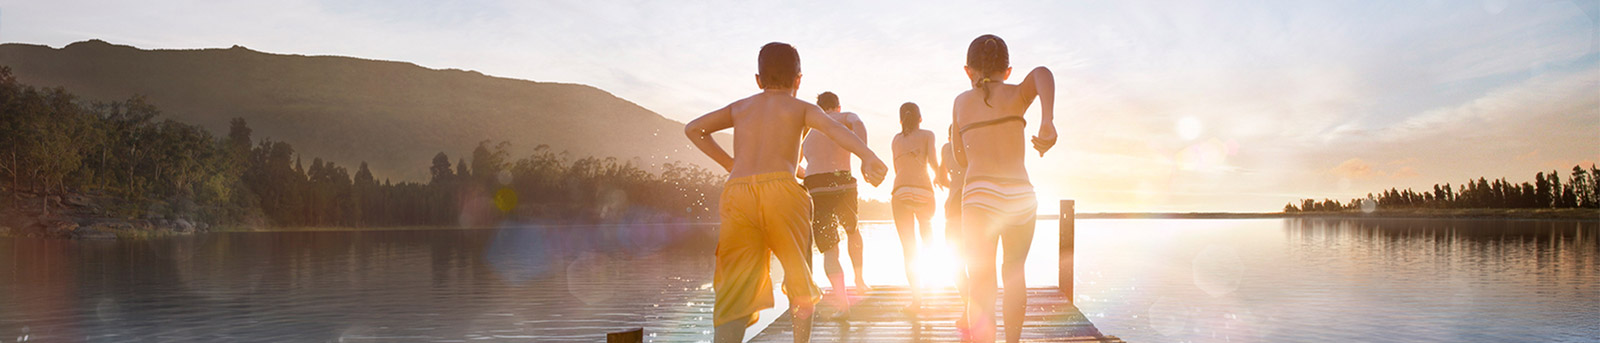 Kids Running towards water during sunset 